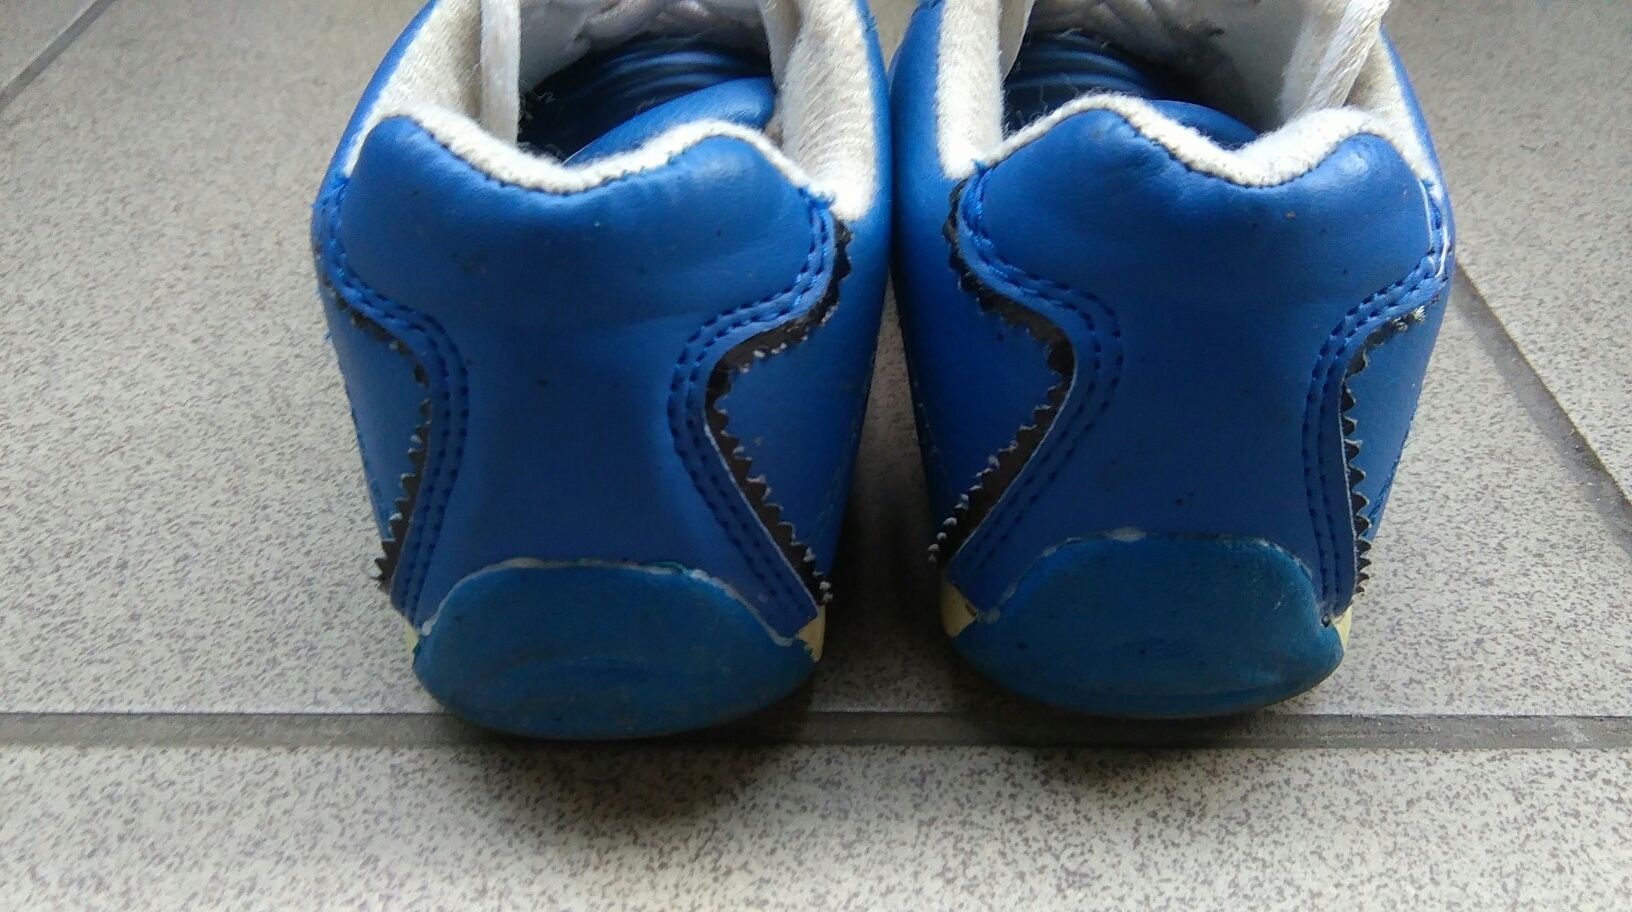 Buty sportowe, niebieskie, rozmiar 26